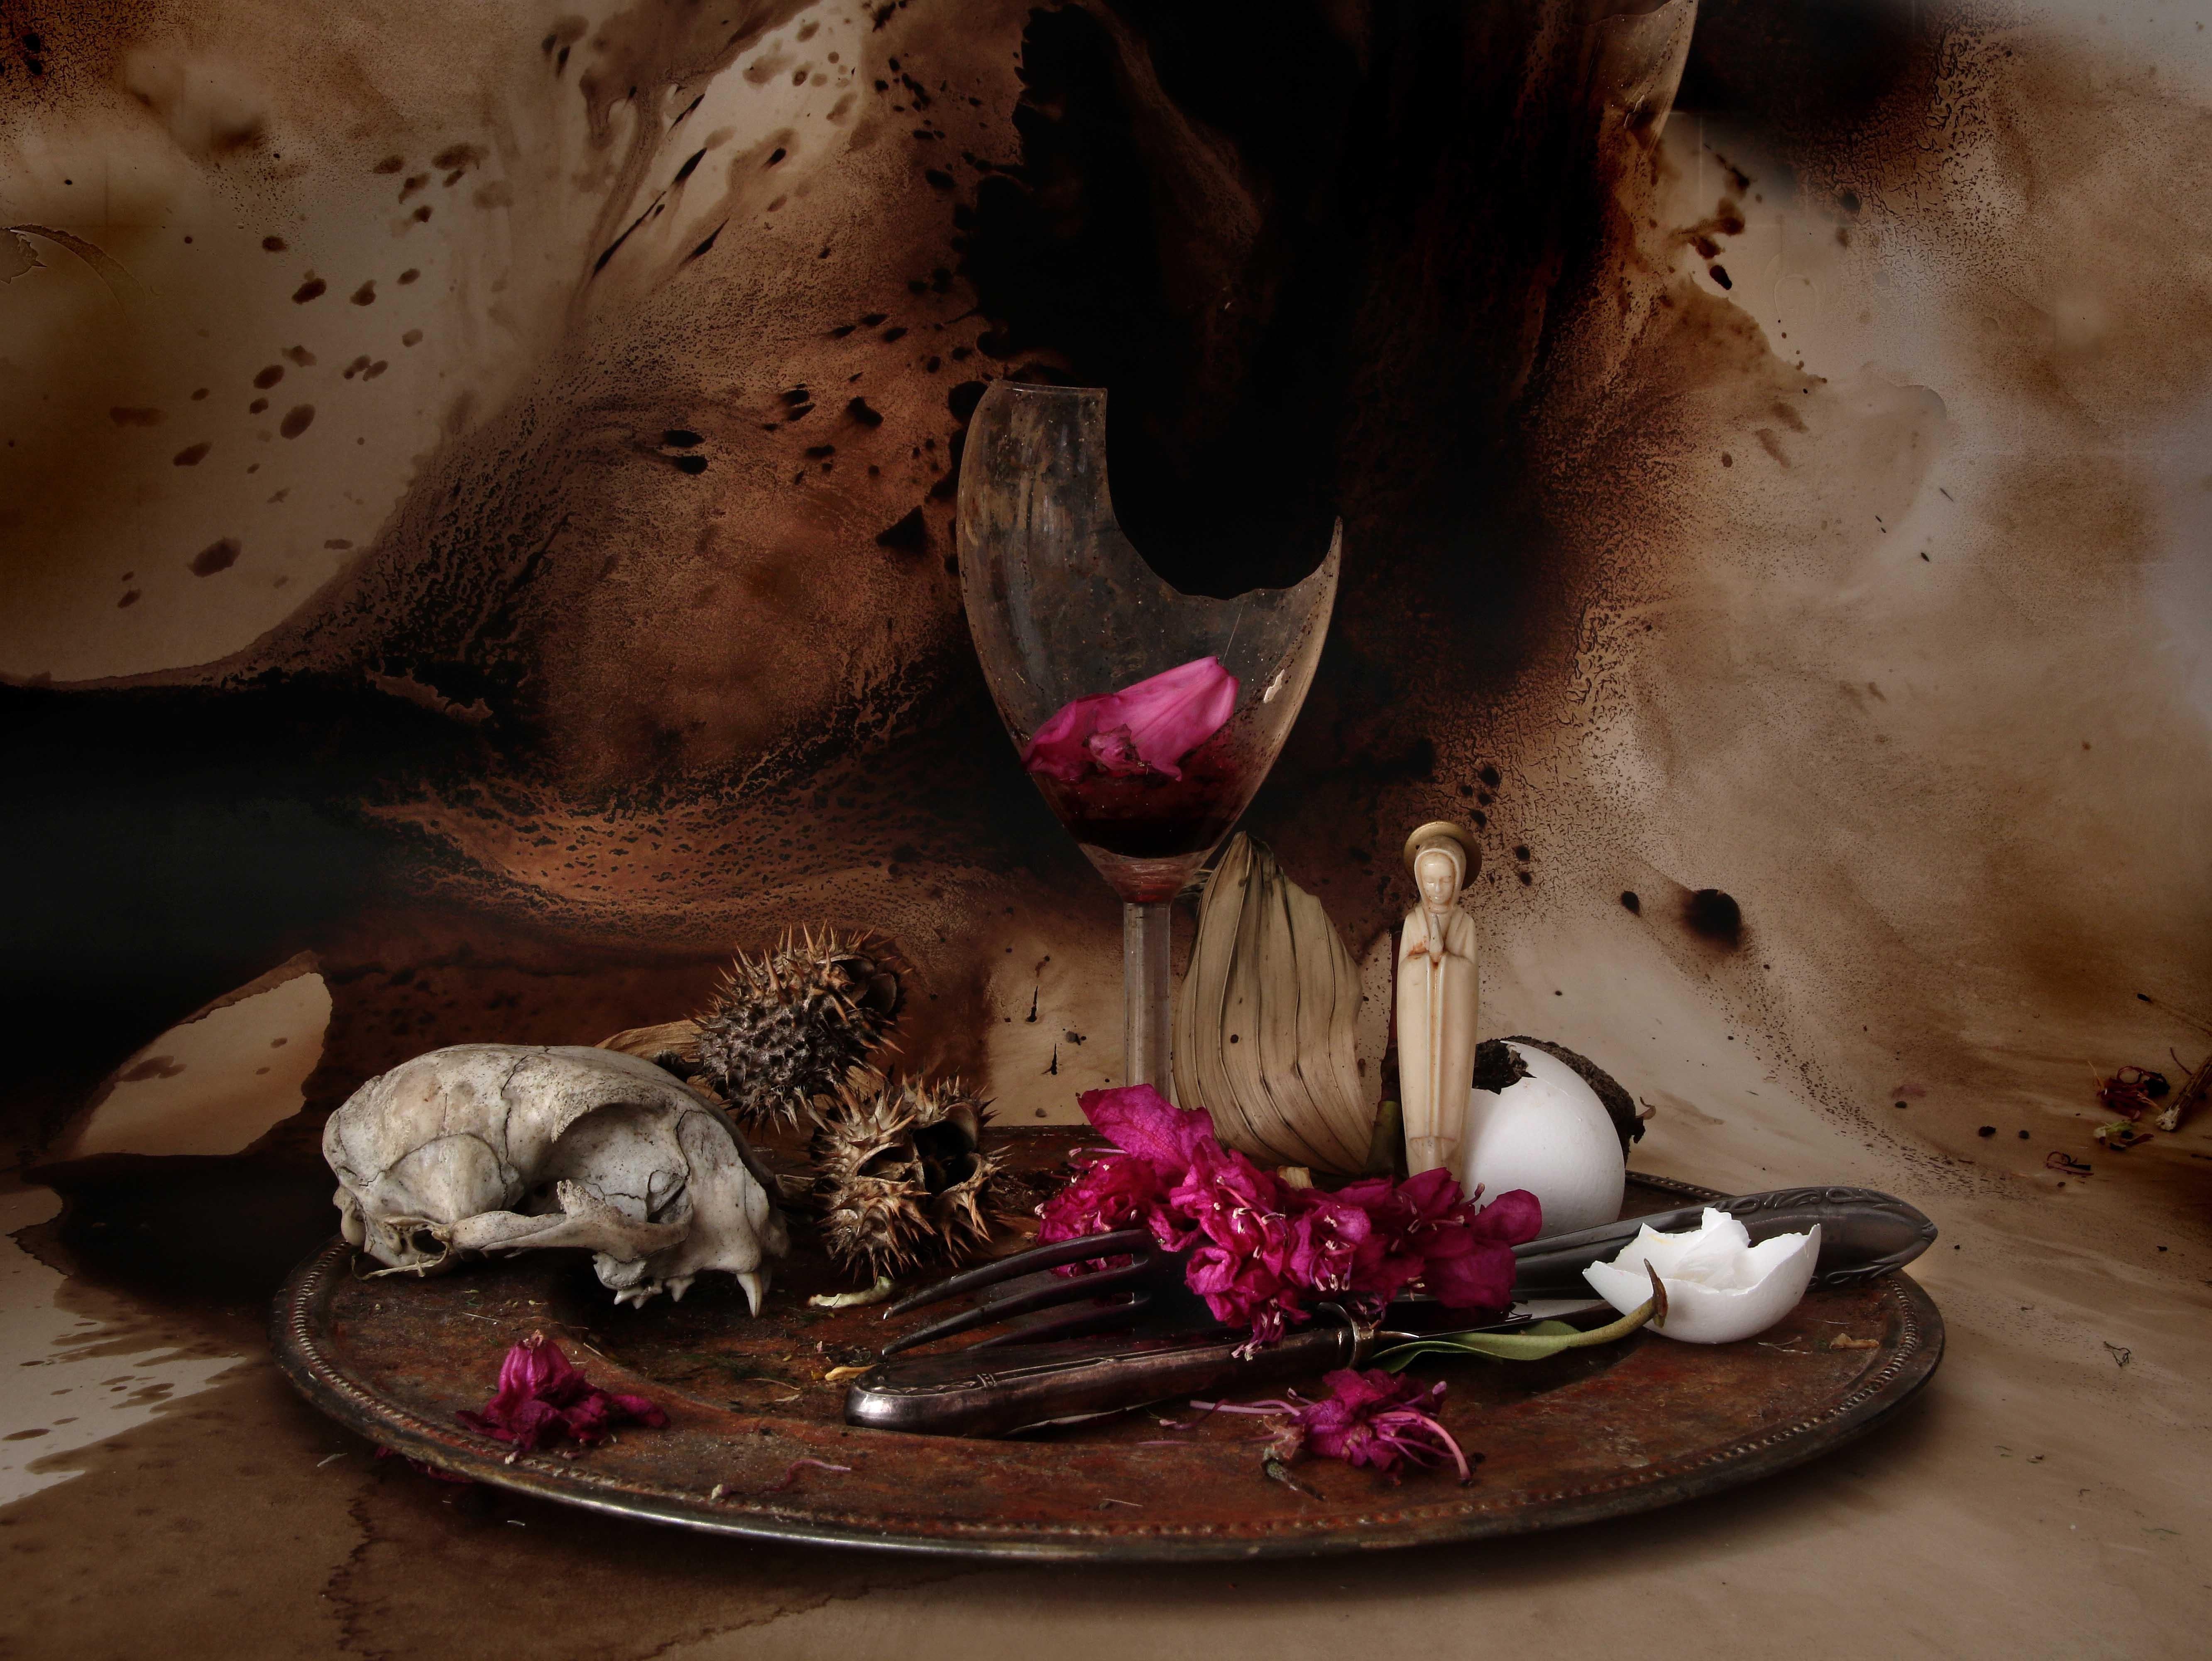 Aus der Serie "Natura Morte" Stillleben
Das fotografische Bild der verwelkten Blumen, der verfaulten Früchte, der Tierknochen und der zerbrochenen Gläser scheint die Objekte zu konservieren, sie am Leben zu erhalten und sie so über den Tod hinaus zu